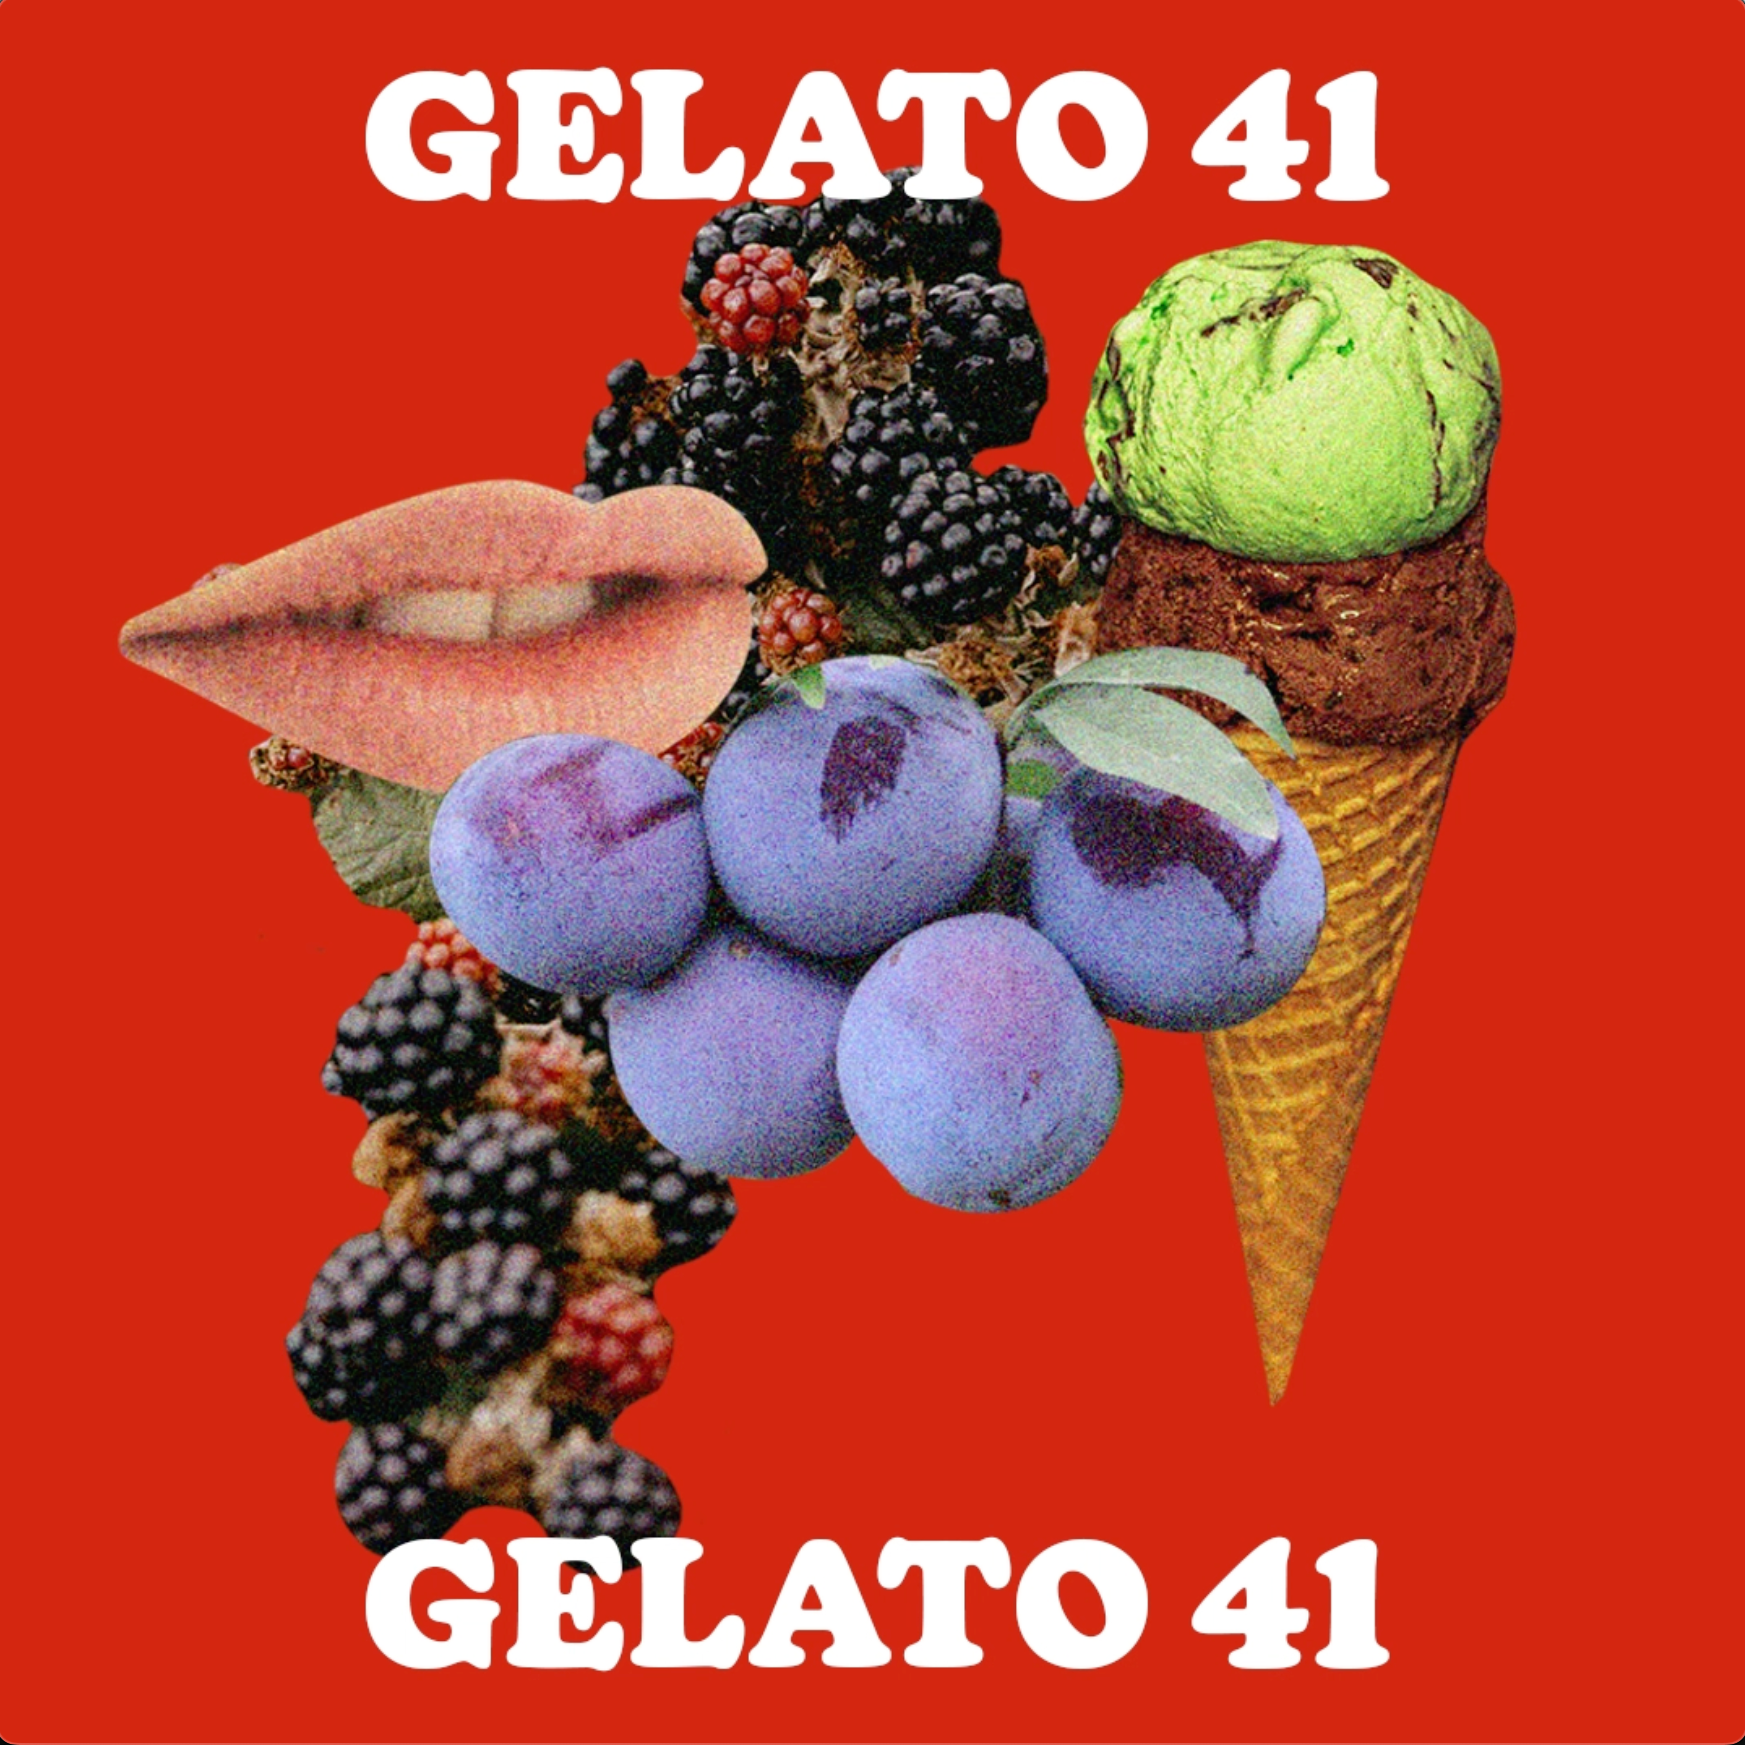 Gelato #41